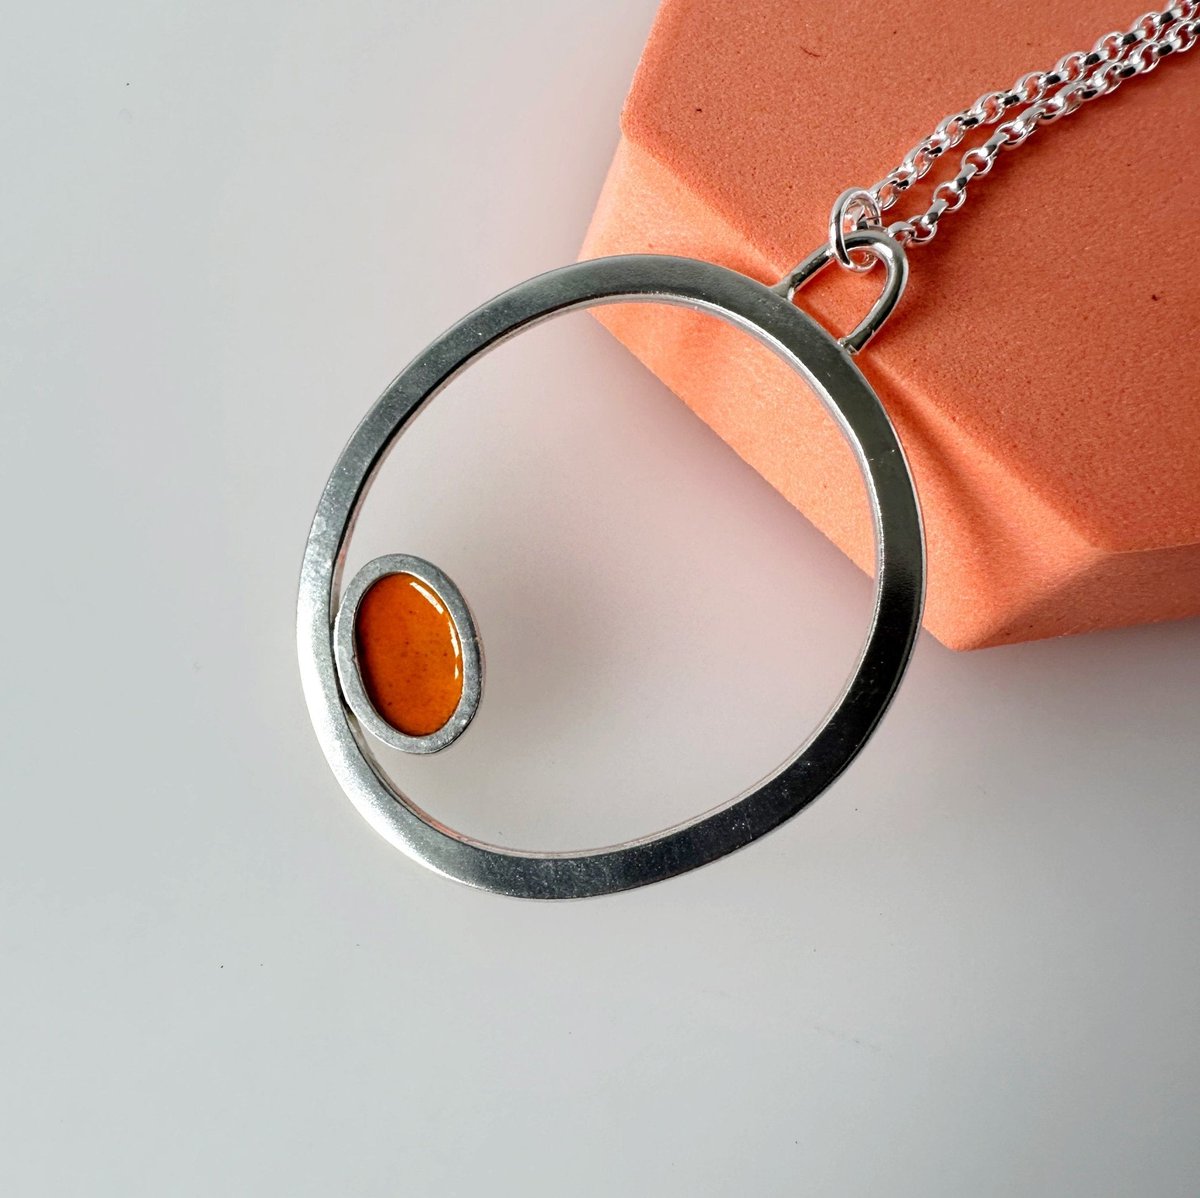 Silver Circle Pendant with Enamelled Oval in Orange tuppu.net/8dba804b #HandmadeHour #inbizhour #giftideas #MHHSBD ##UKGiftHour #shopsmall #UKHashtags #bizbubble #Orange